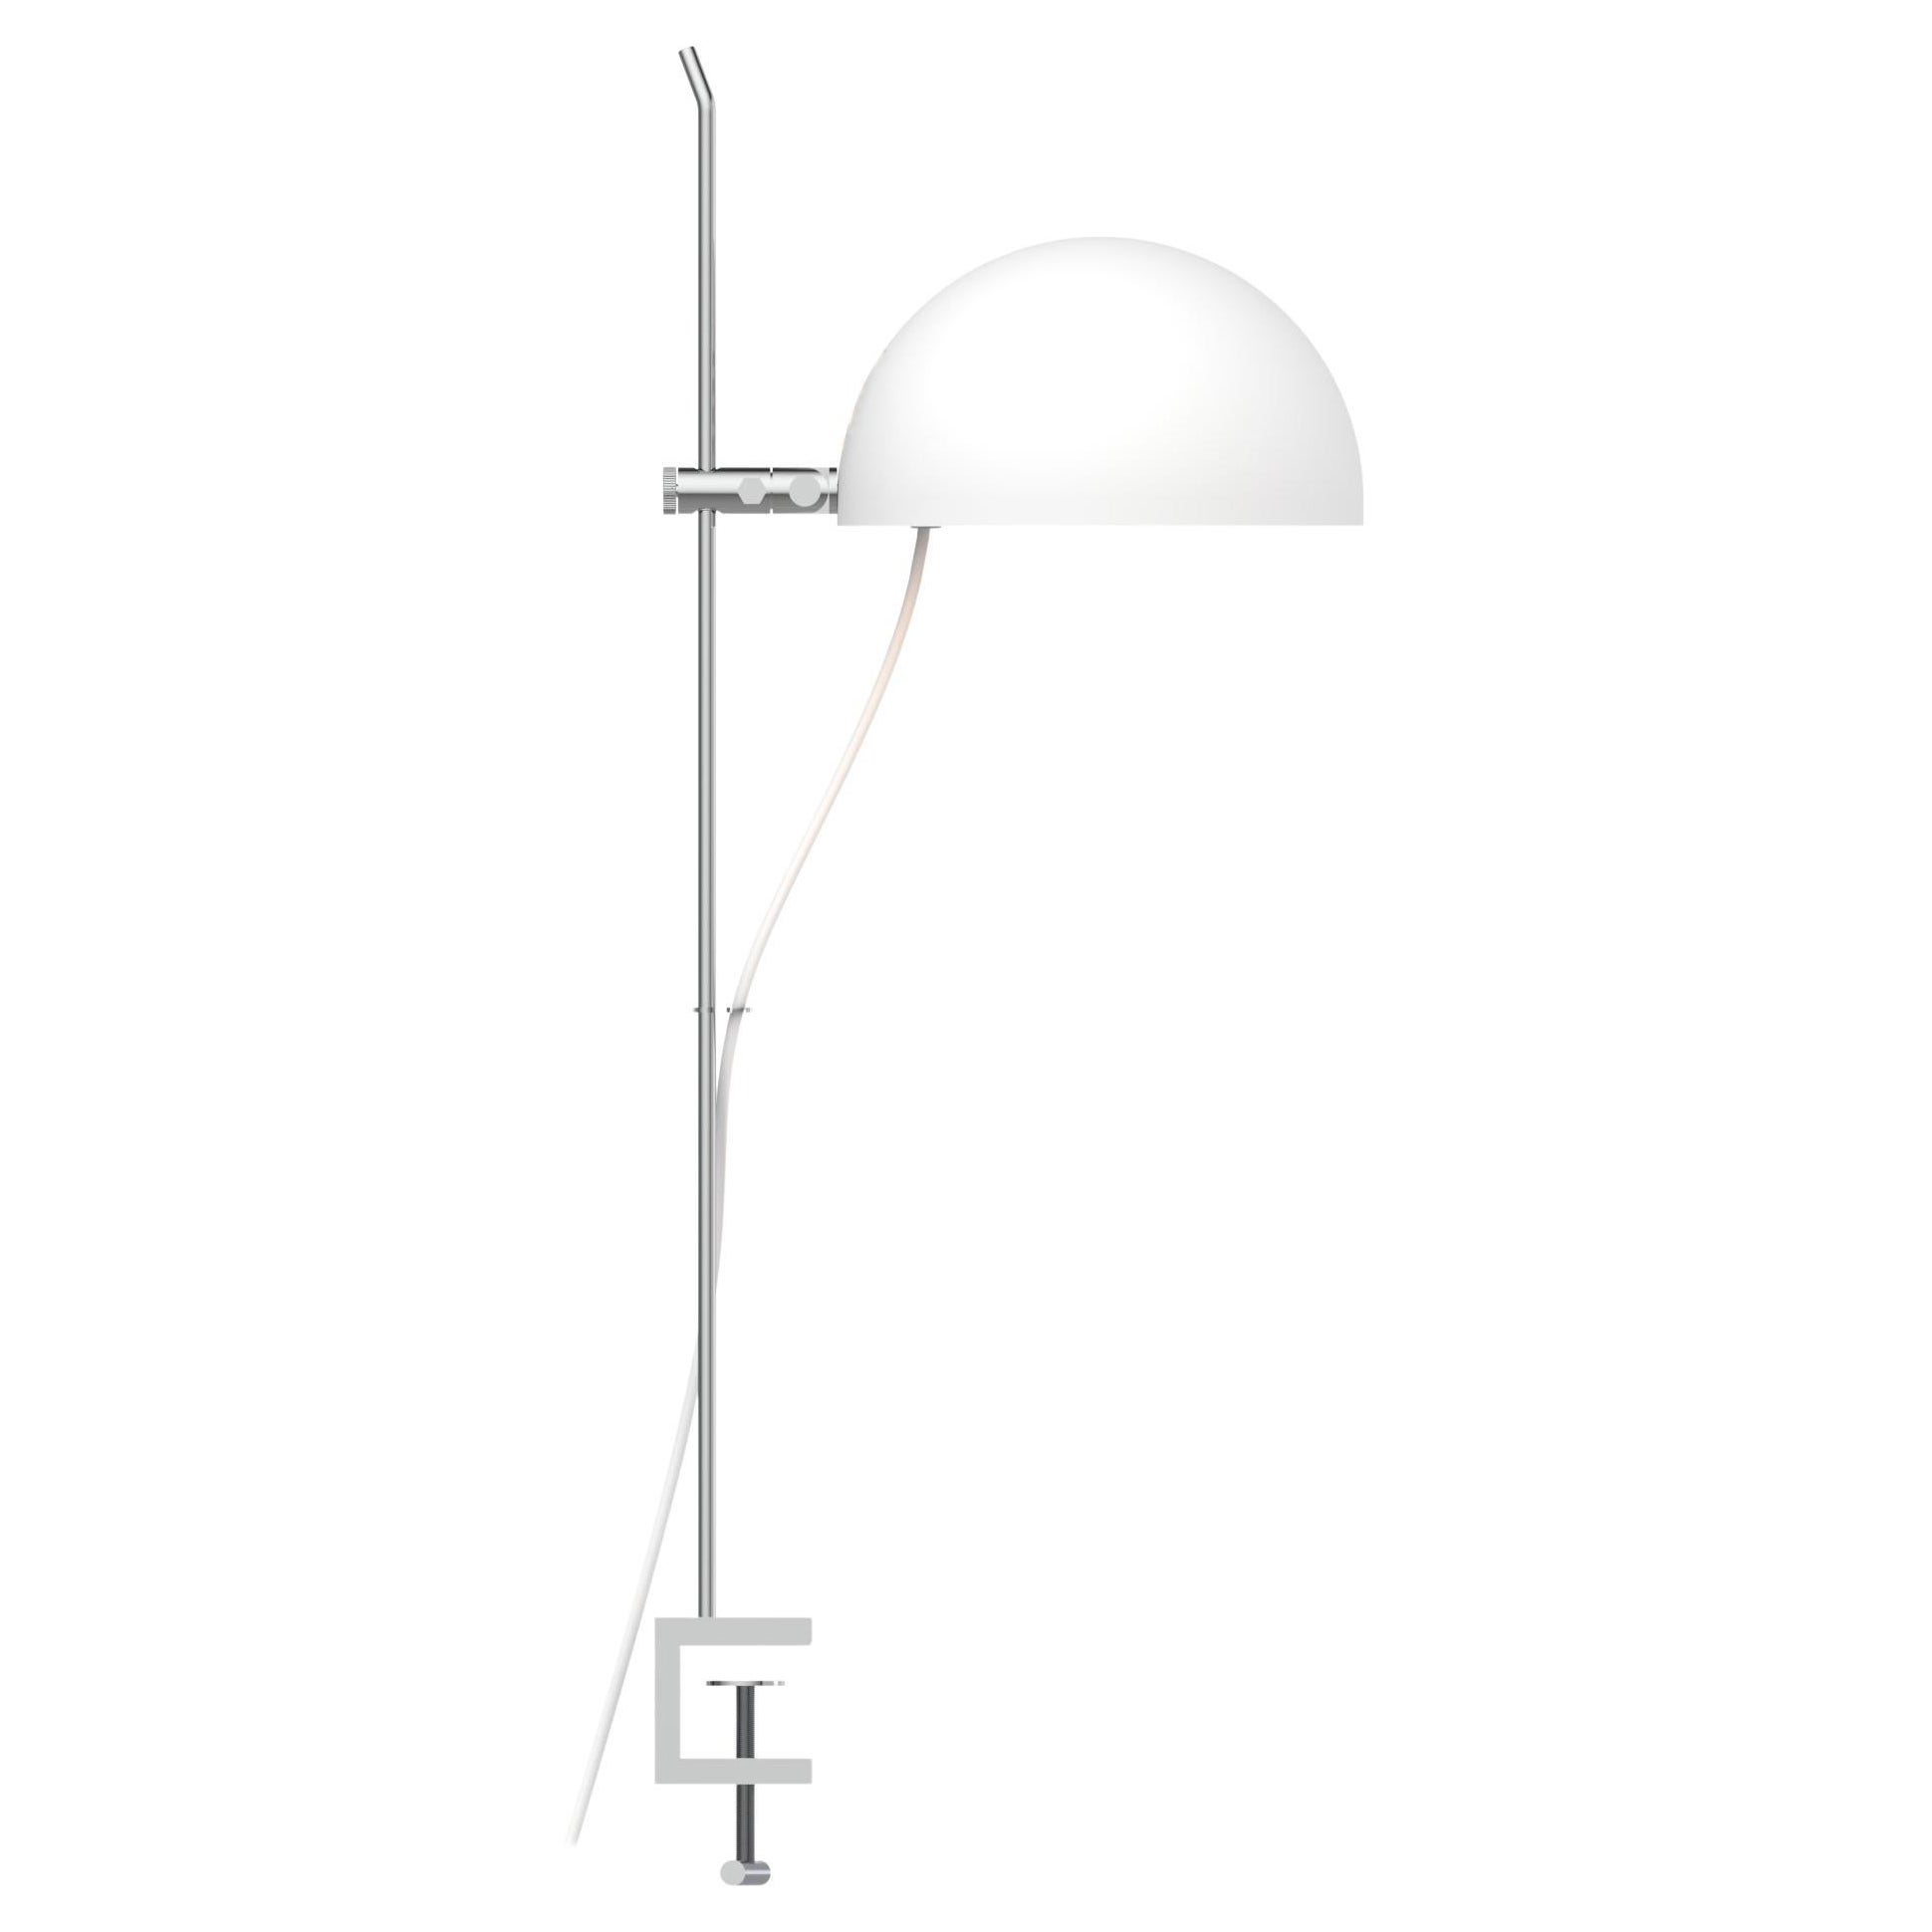 Alain Richard 'A22f' Task Lamp in White for Disderot For Sale